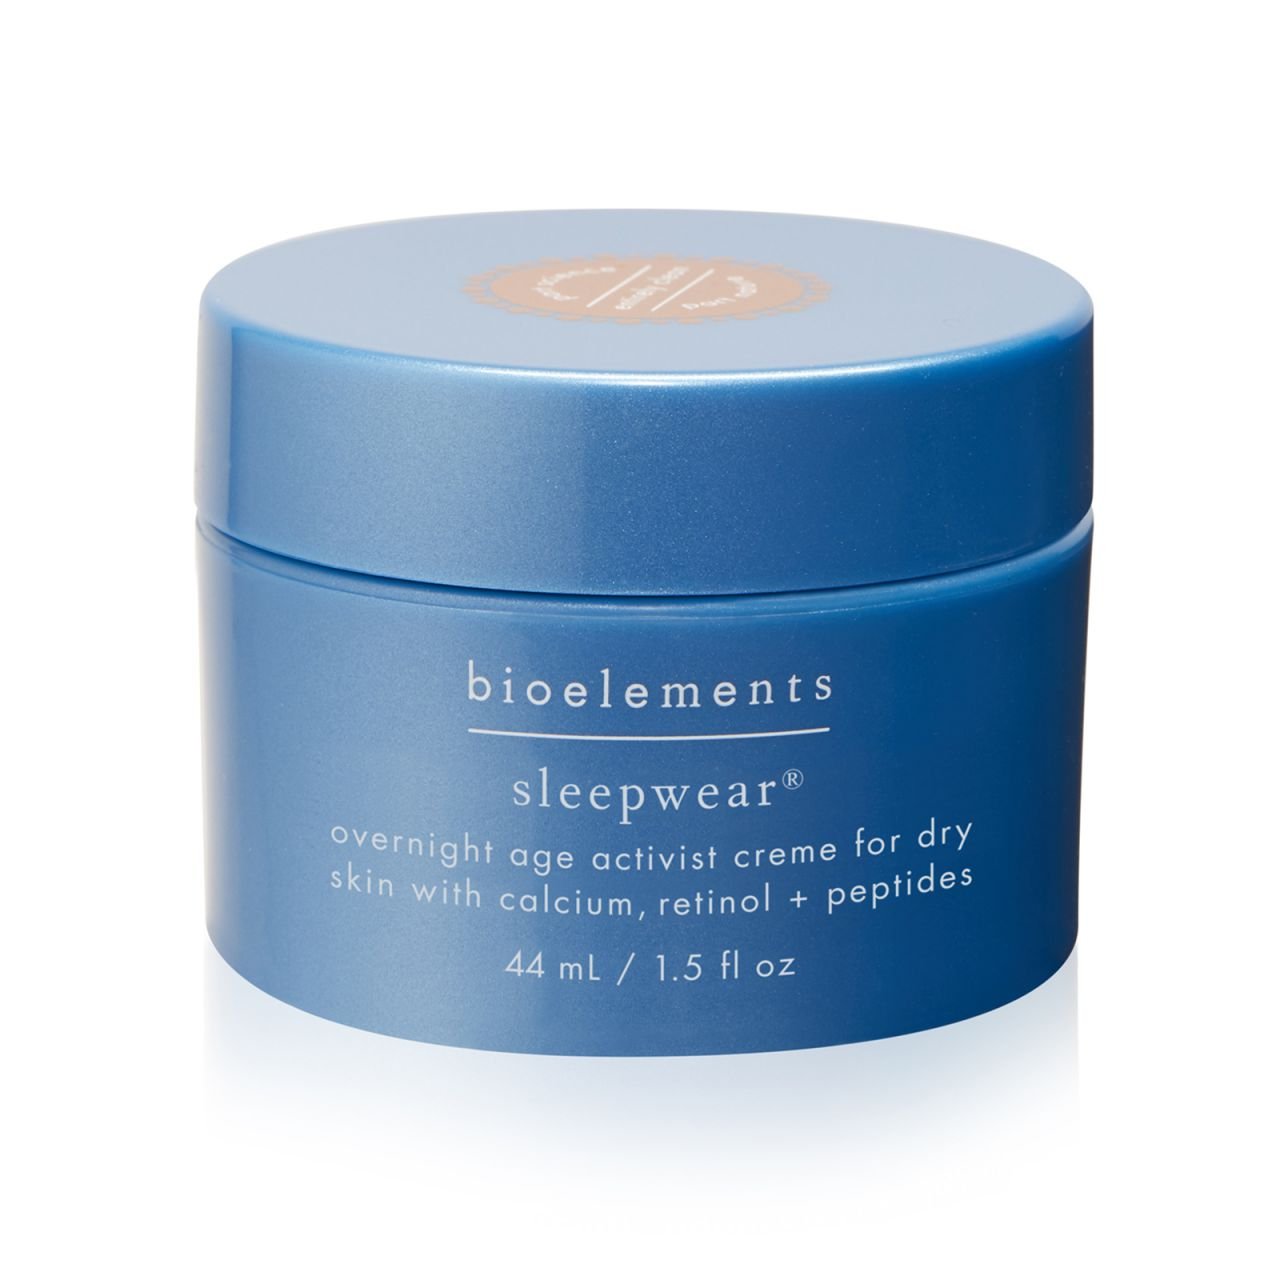 Ночной антивозрастной крем для нормальной и сухой кожи Sleepwear Bioelements, 44мл